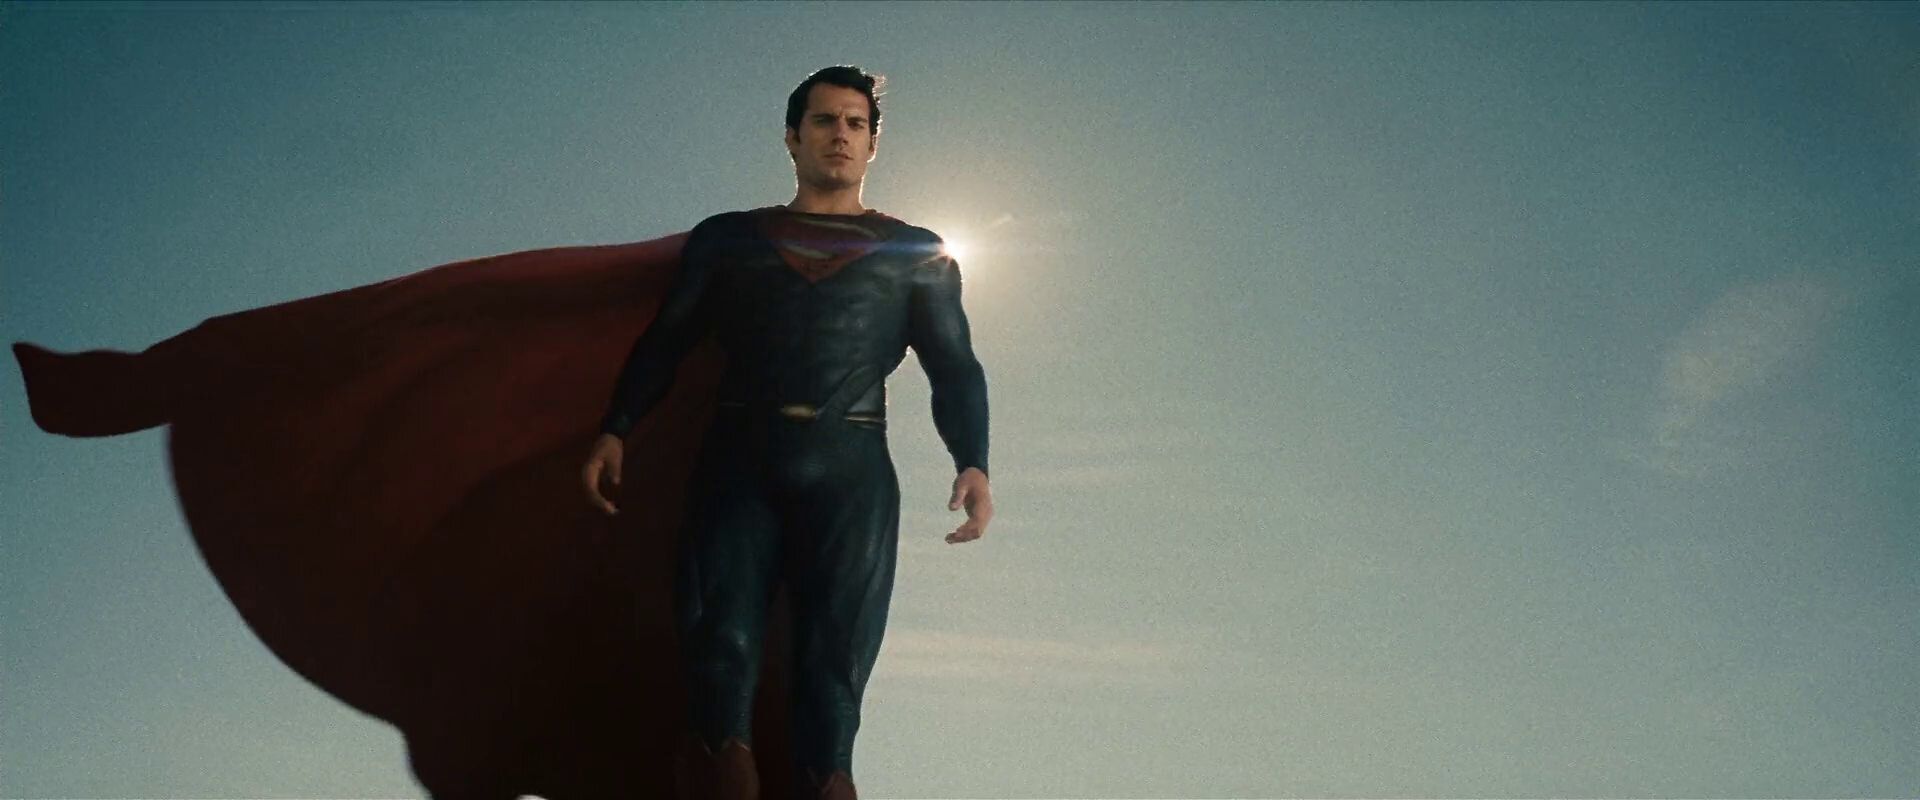 Superman (Henry Cavill) - Man of Steel